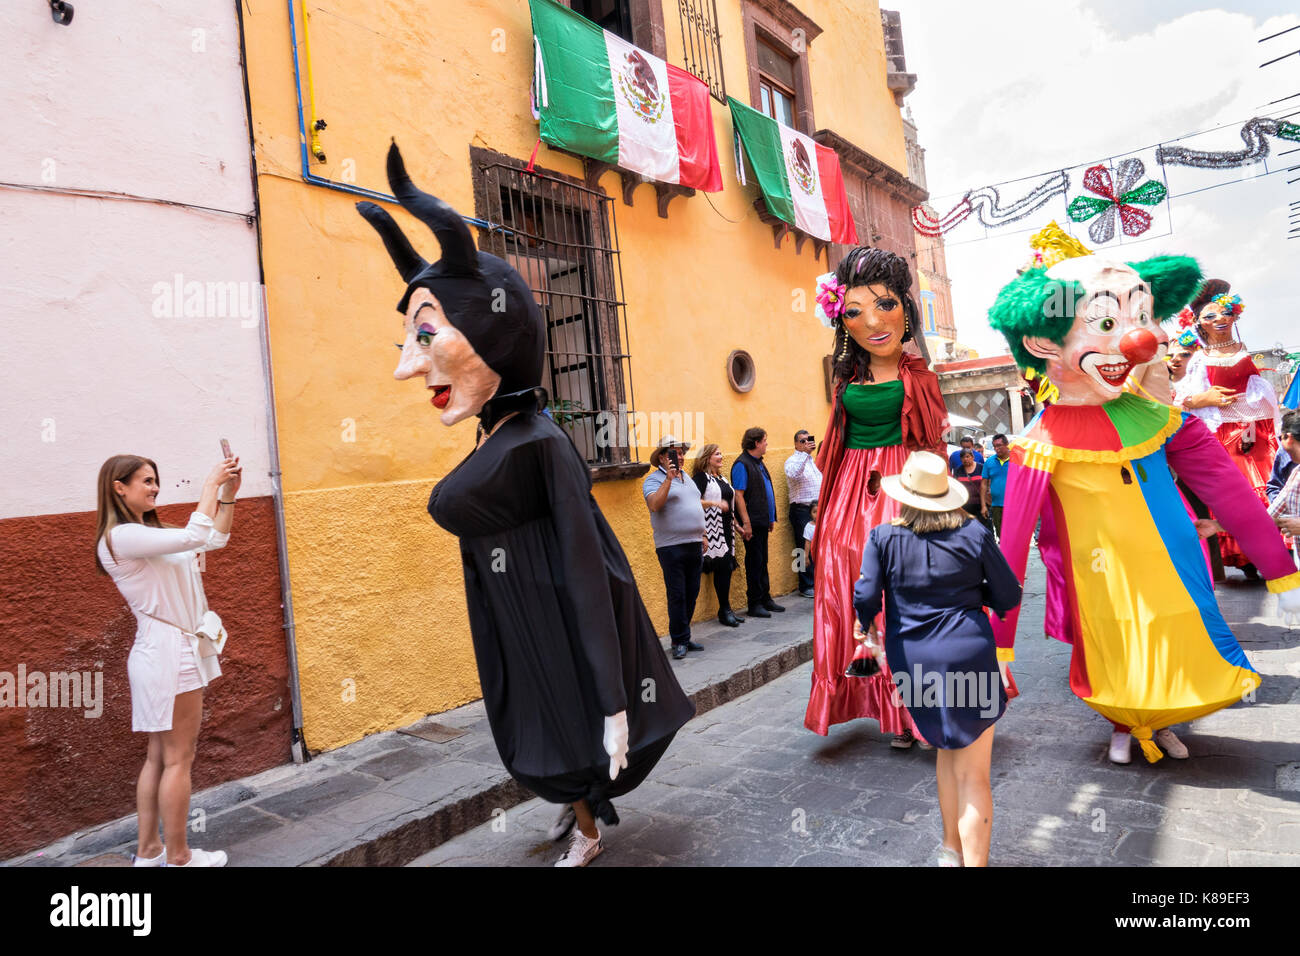 Riesige Pappmaché-Puppen namens Mojigangas tanzen in den Straßen während einer Kinderparade, die die Feierlichkeiten zum mexikanischen Unabhängigkeitstag am 17. September 2017 in San Miguel de Allende, Mexiko, feiert. Stockfoto